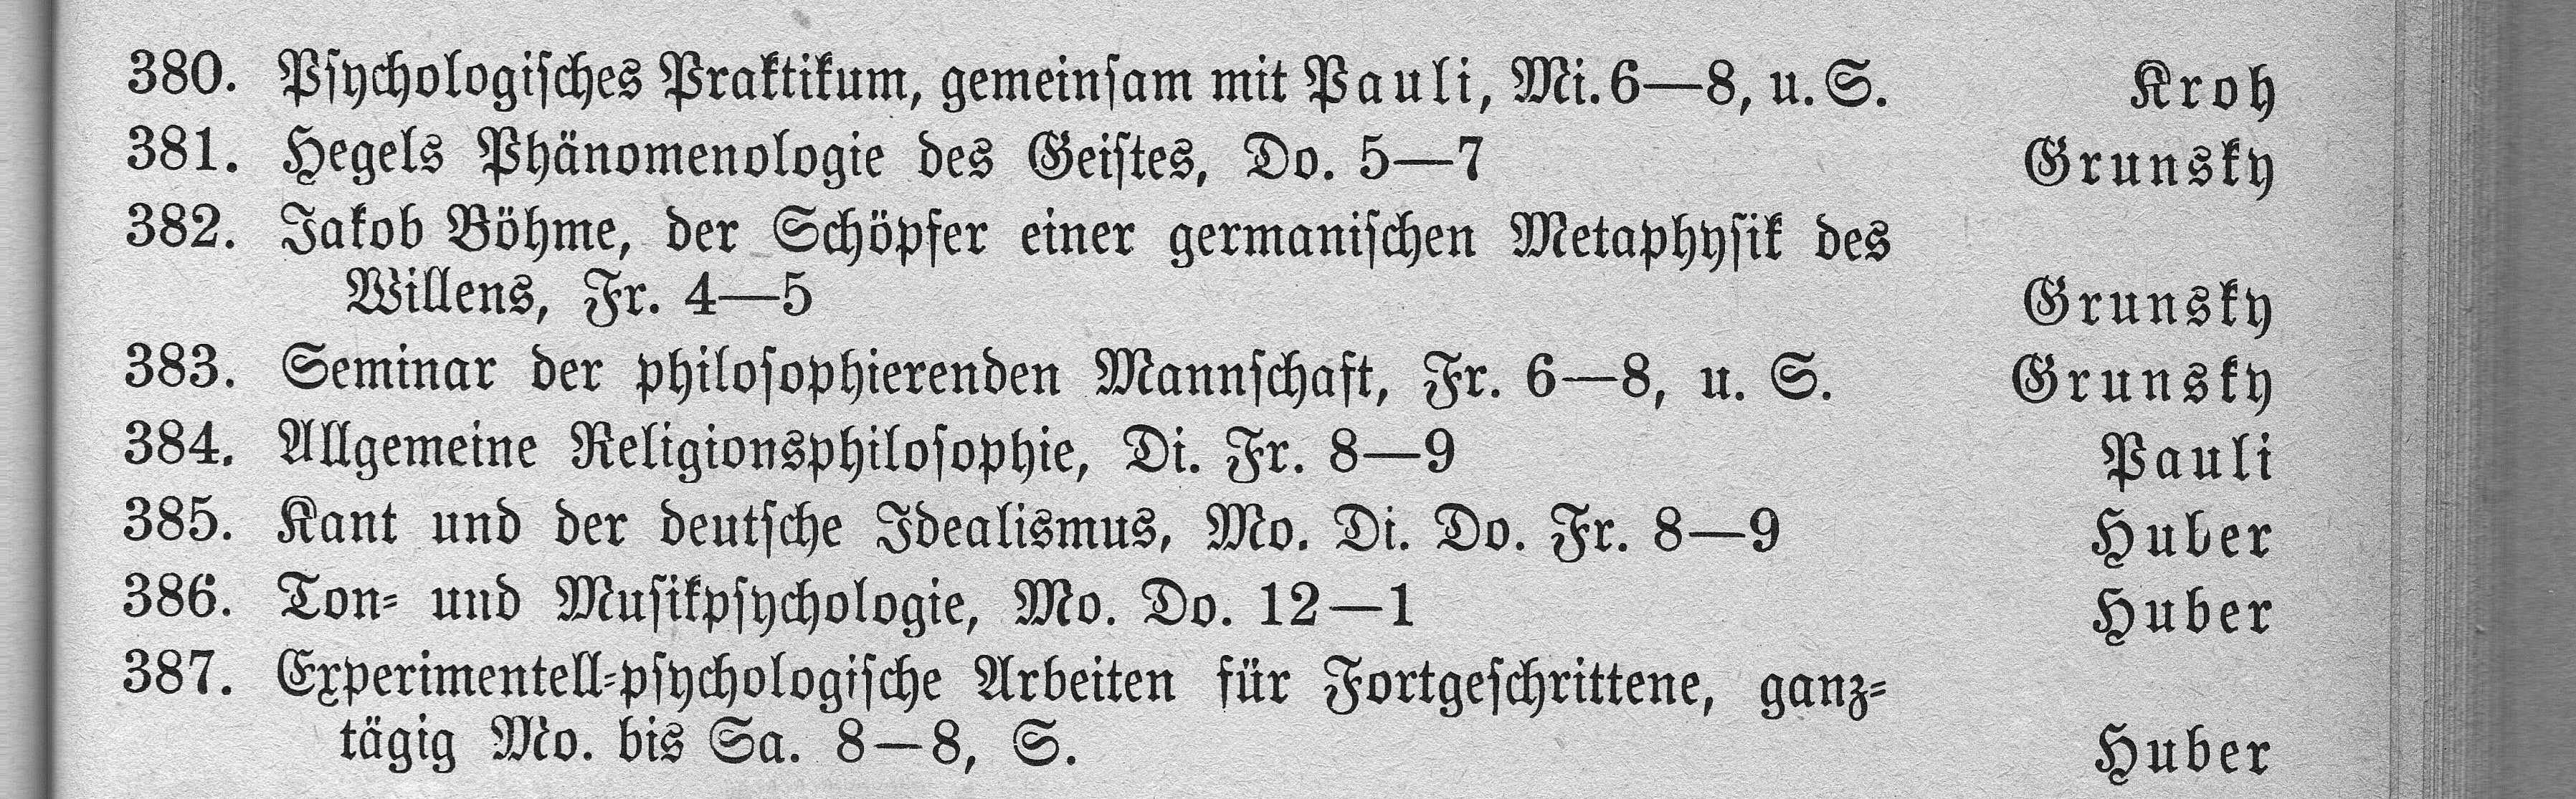 Personen und Vorlesungsverzeichnis Universität-München von 1939, insgesamt drei Auszüge über Professor Kurt Huber, S. 33, S. 115, S. 188 Nr. 385-386, S. 118, Nr. 468, keine Archivkopie, Privatbesitz